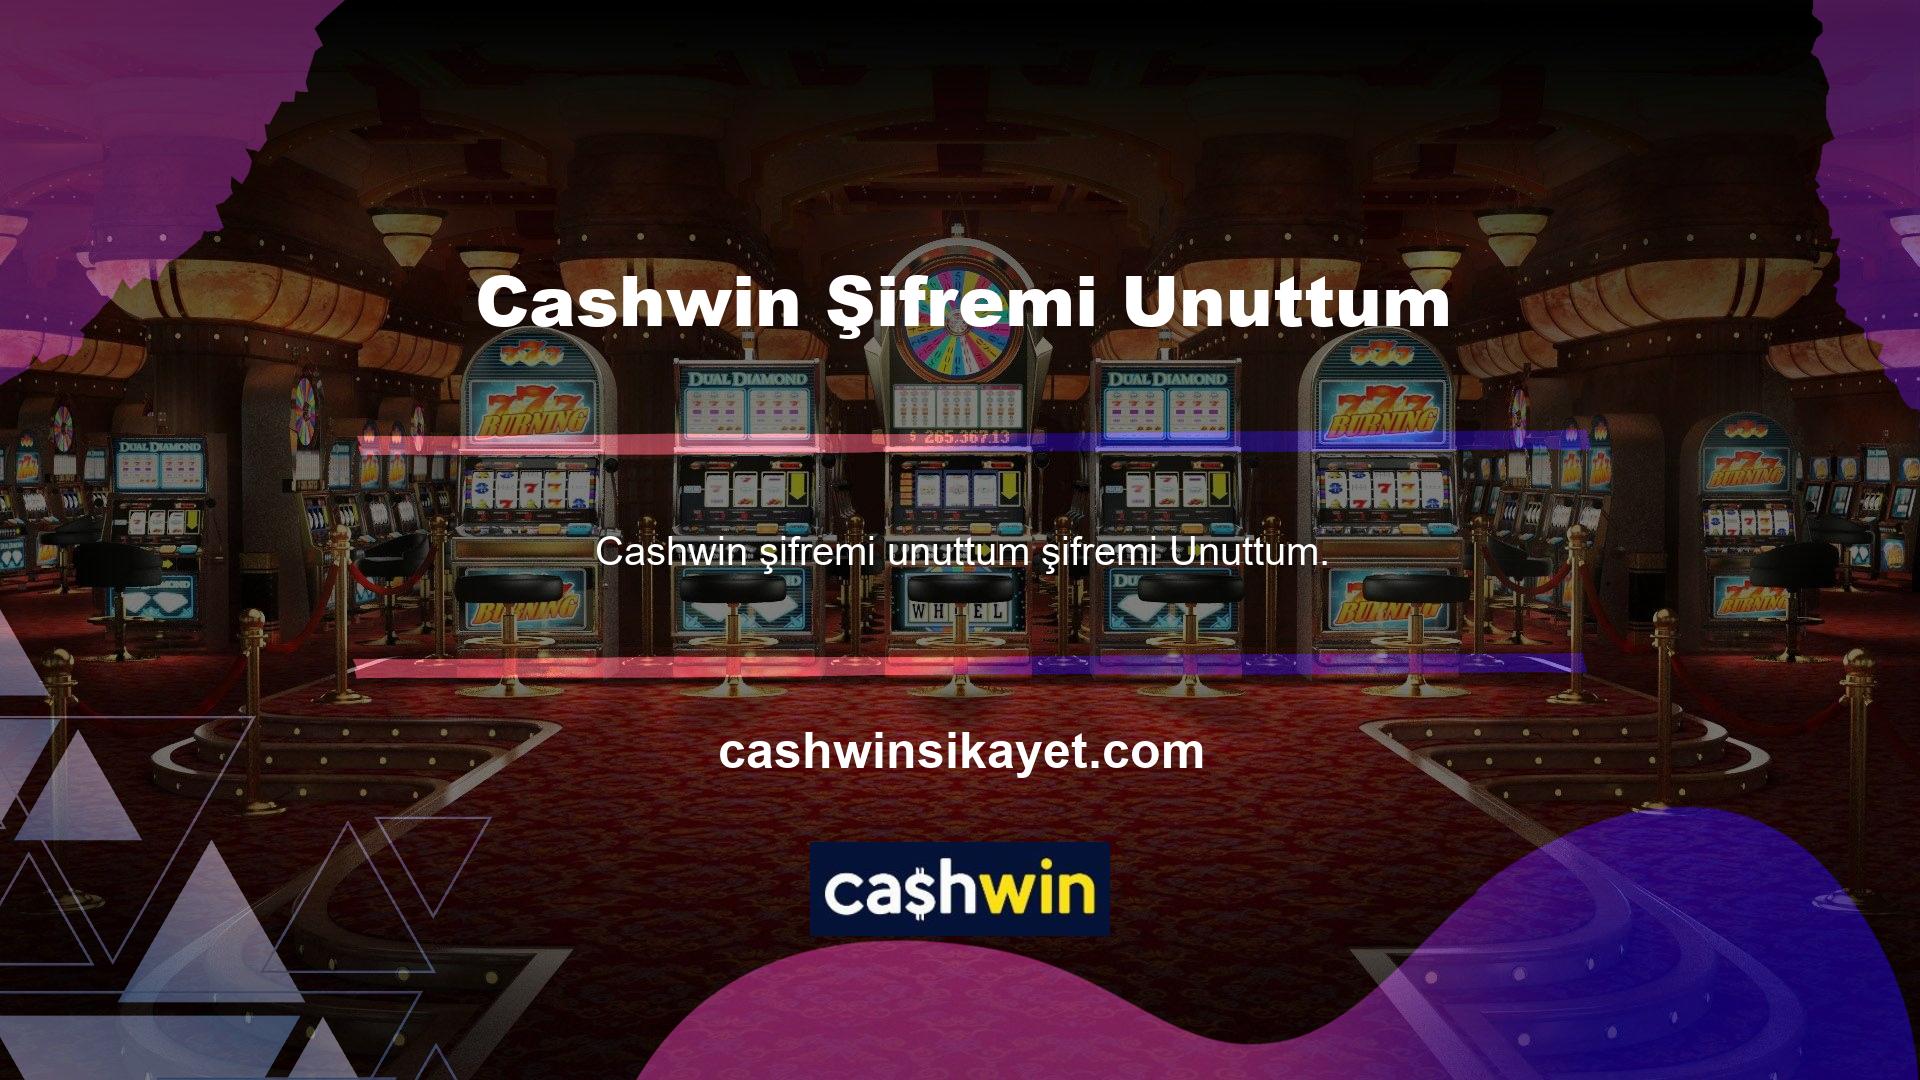 Tüm bahis sitelerinde olduğu gibi Cashwin şifrenizi unutmanız durumunda hesabınızı silmez